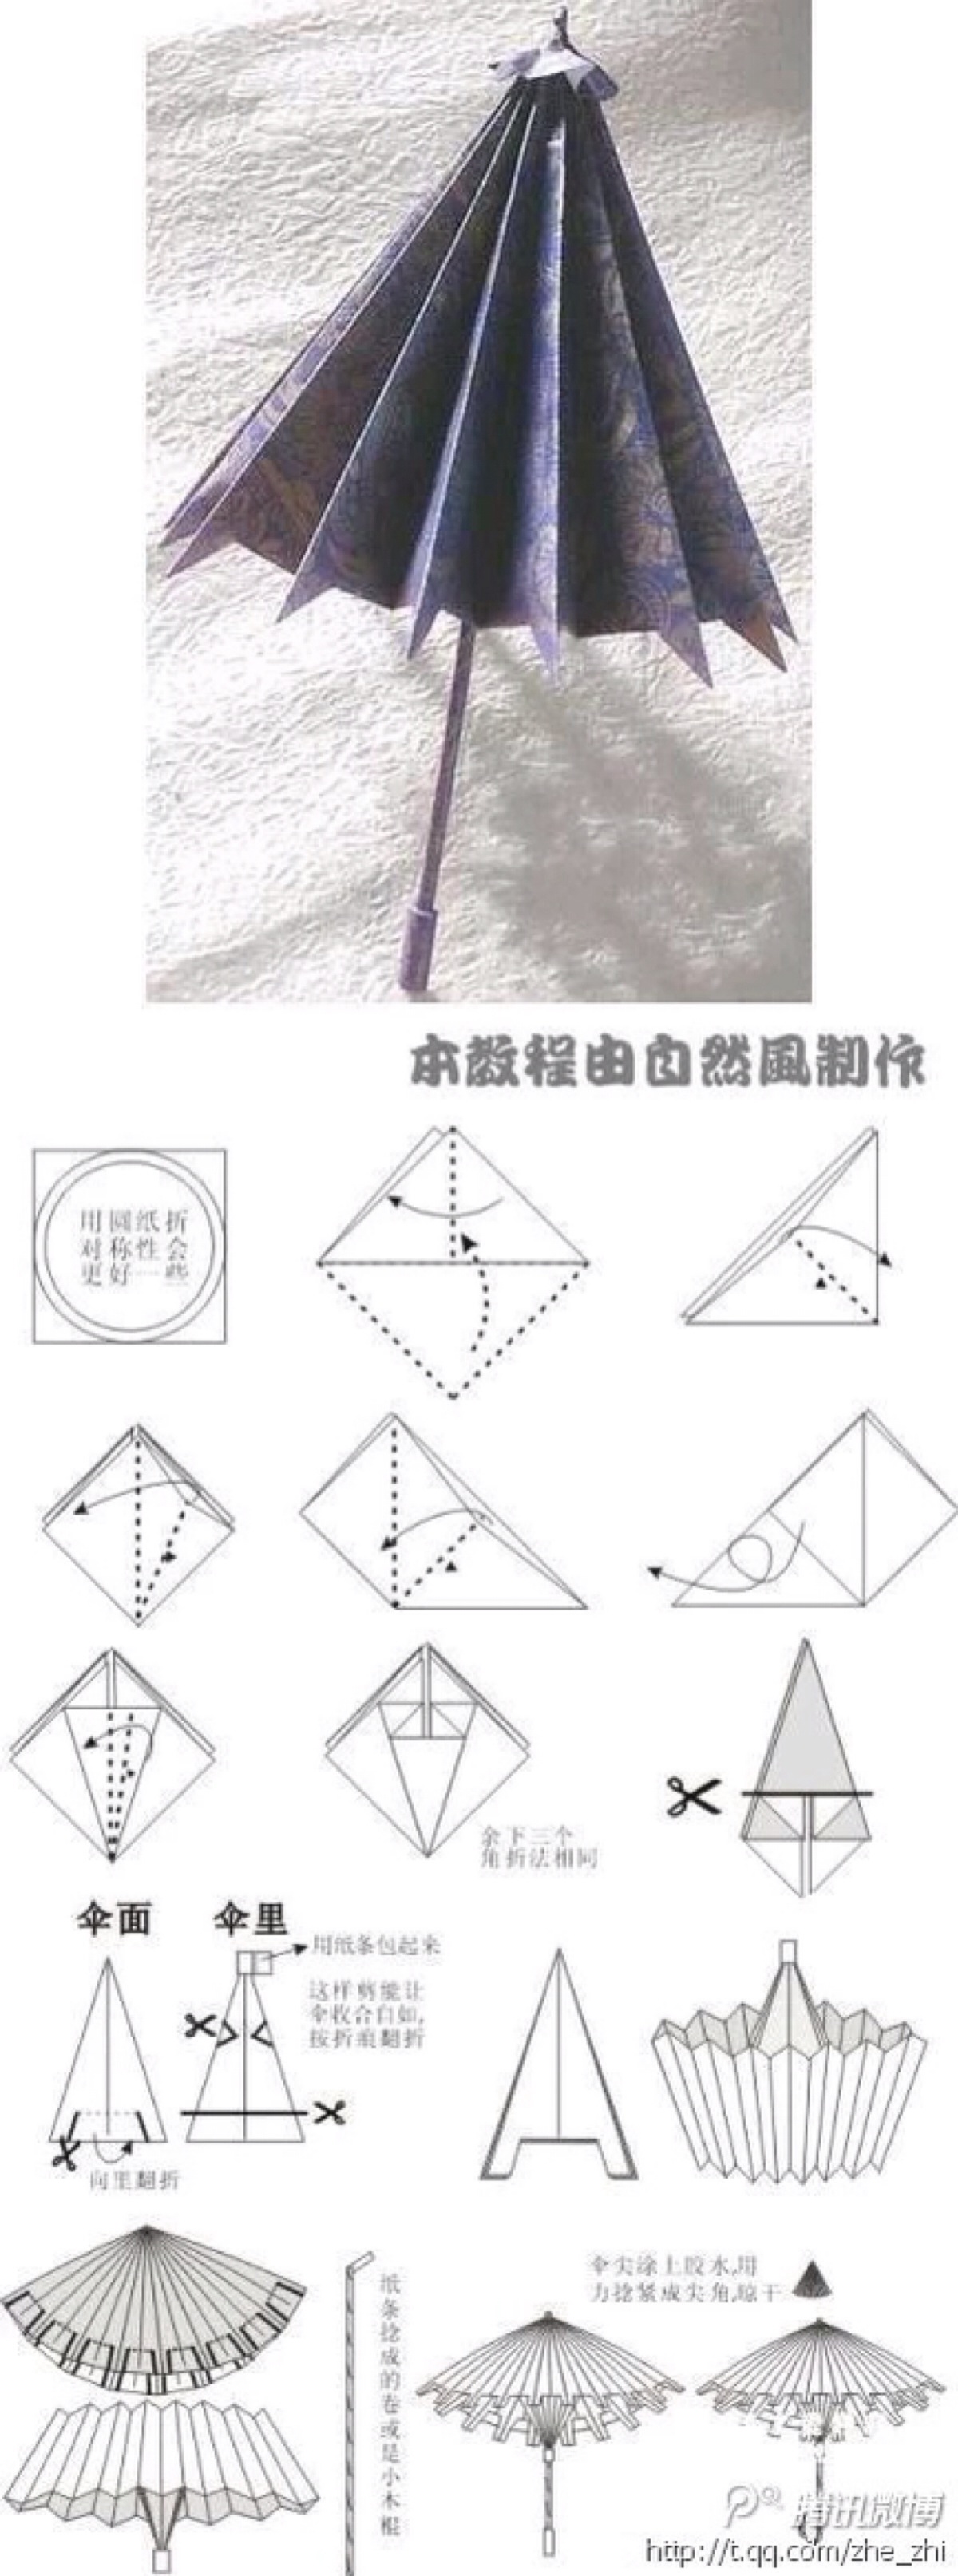 纸伞的折法制作过程图片